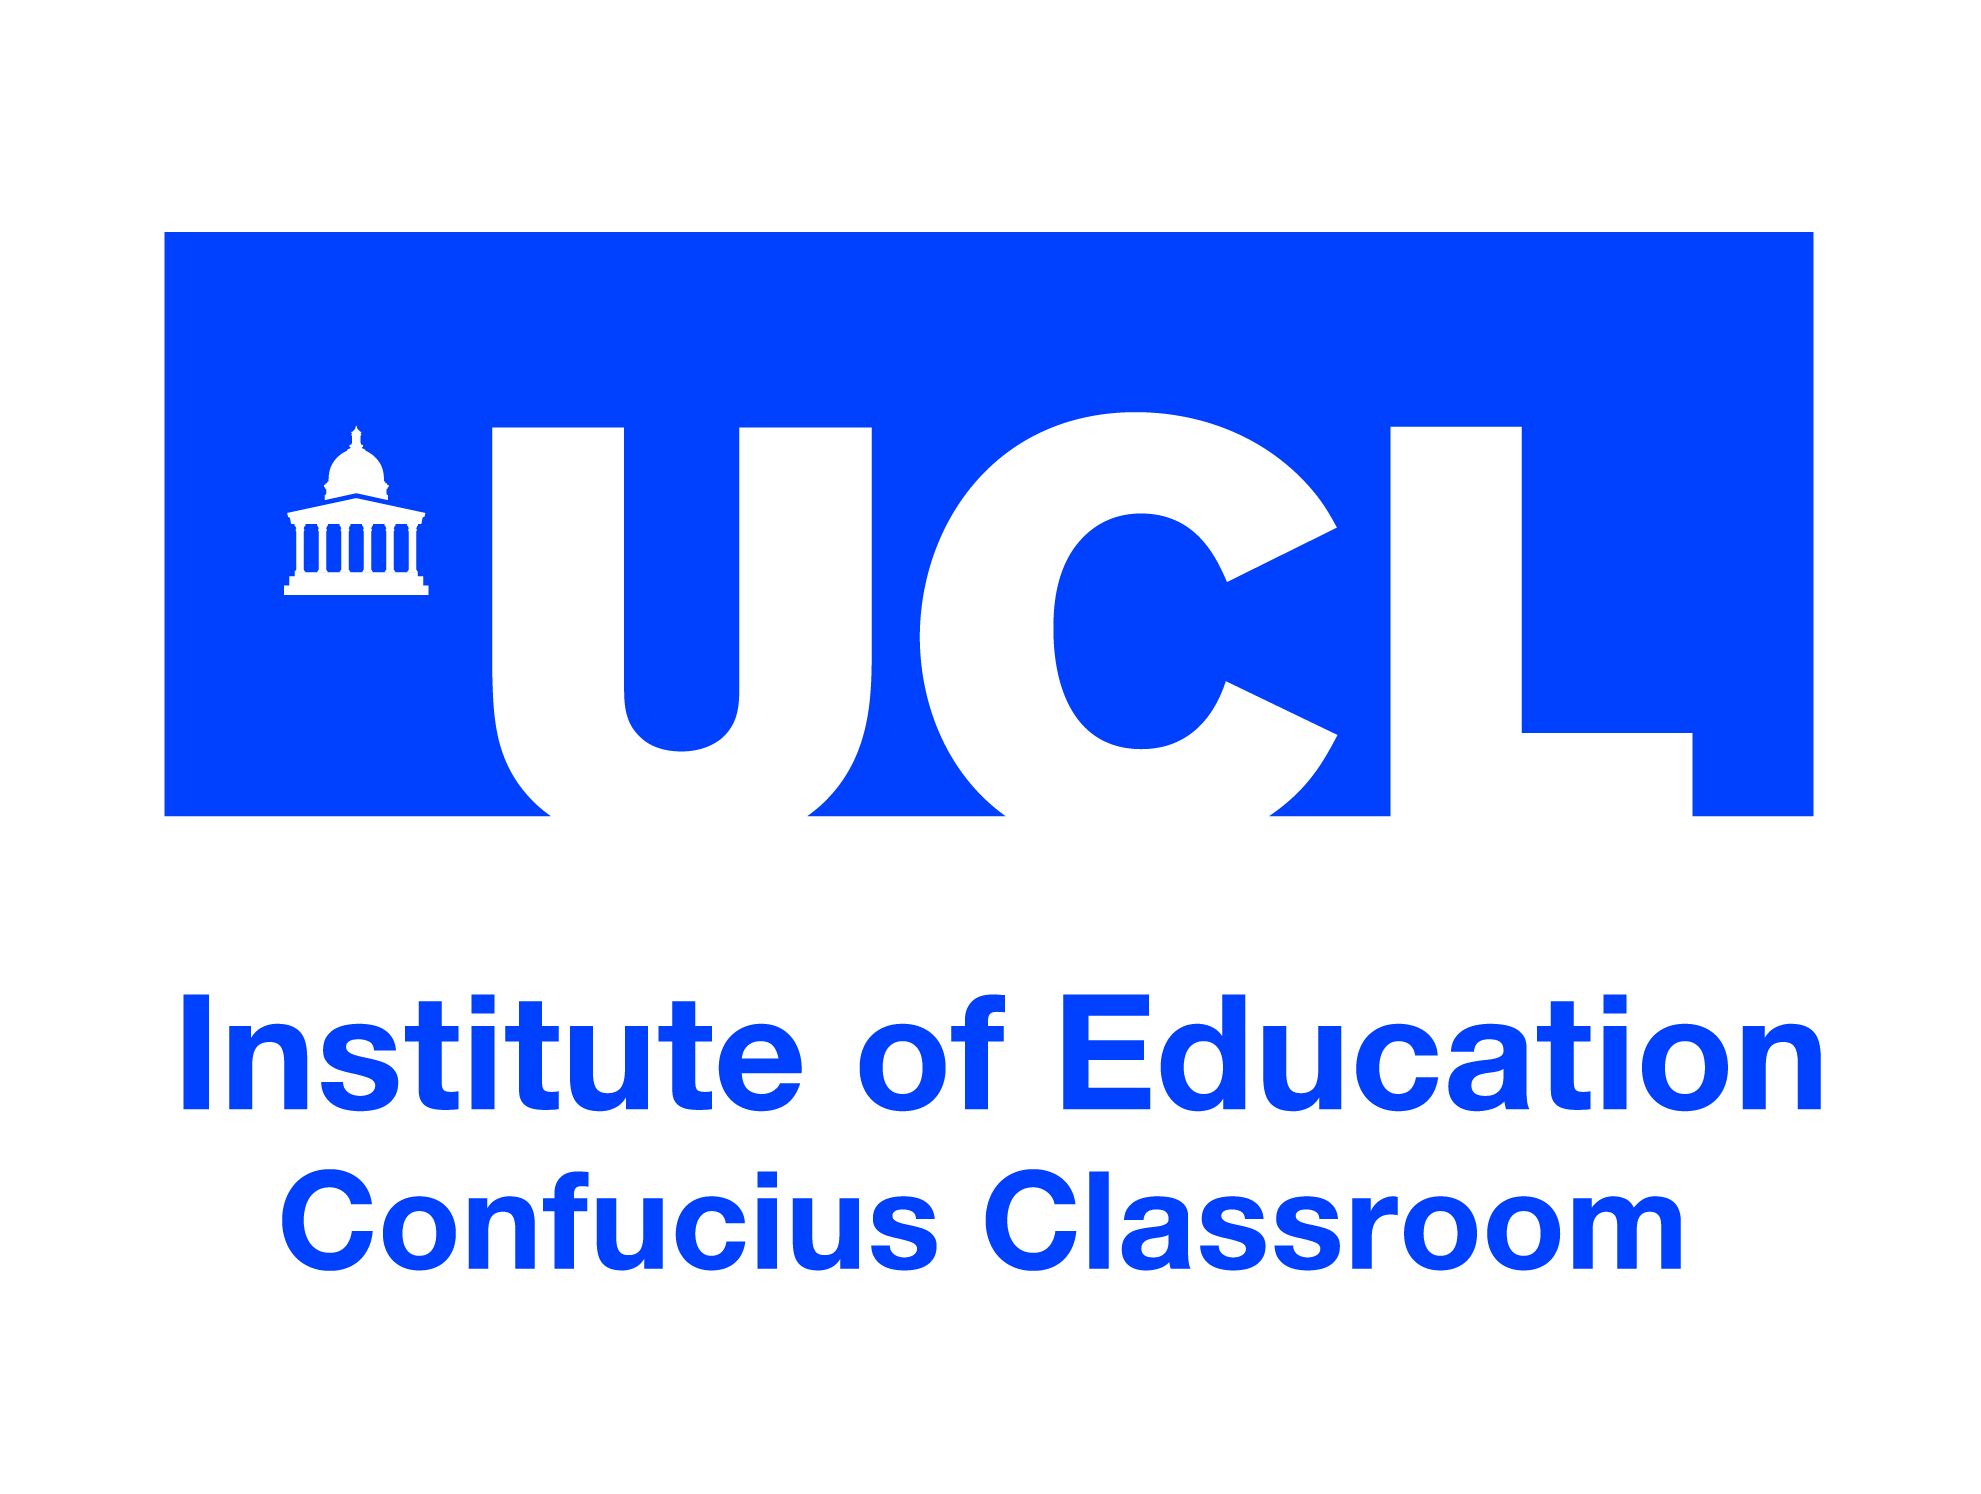 Confucius classroom logo